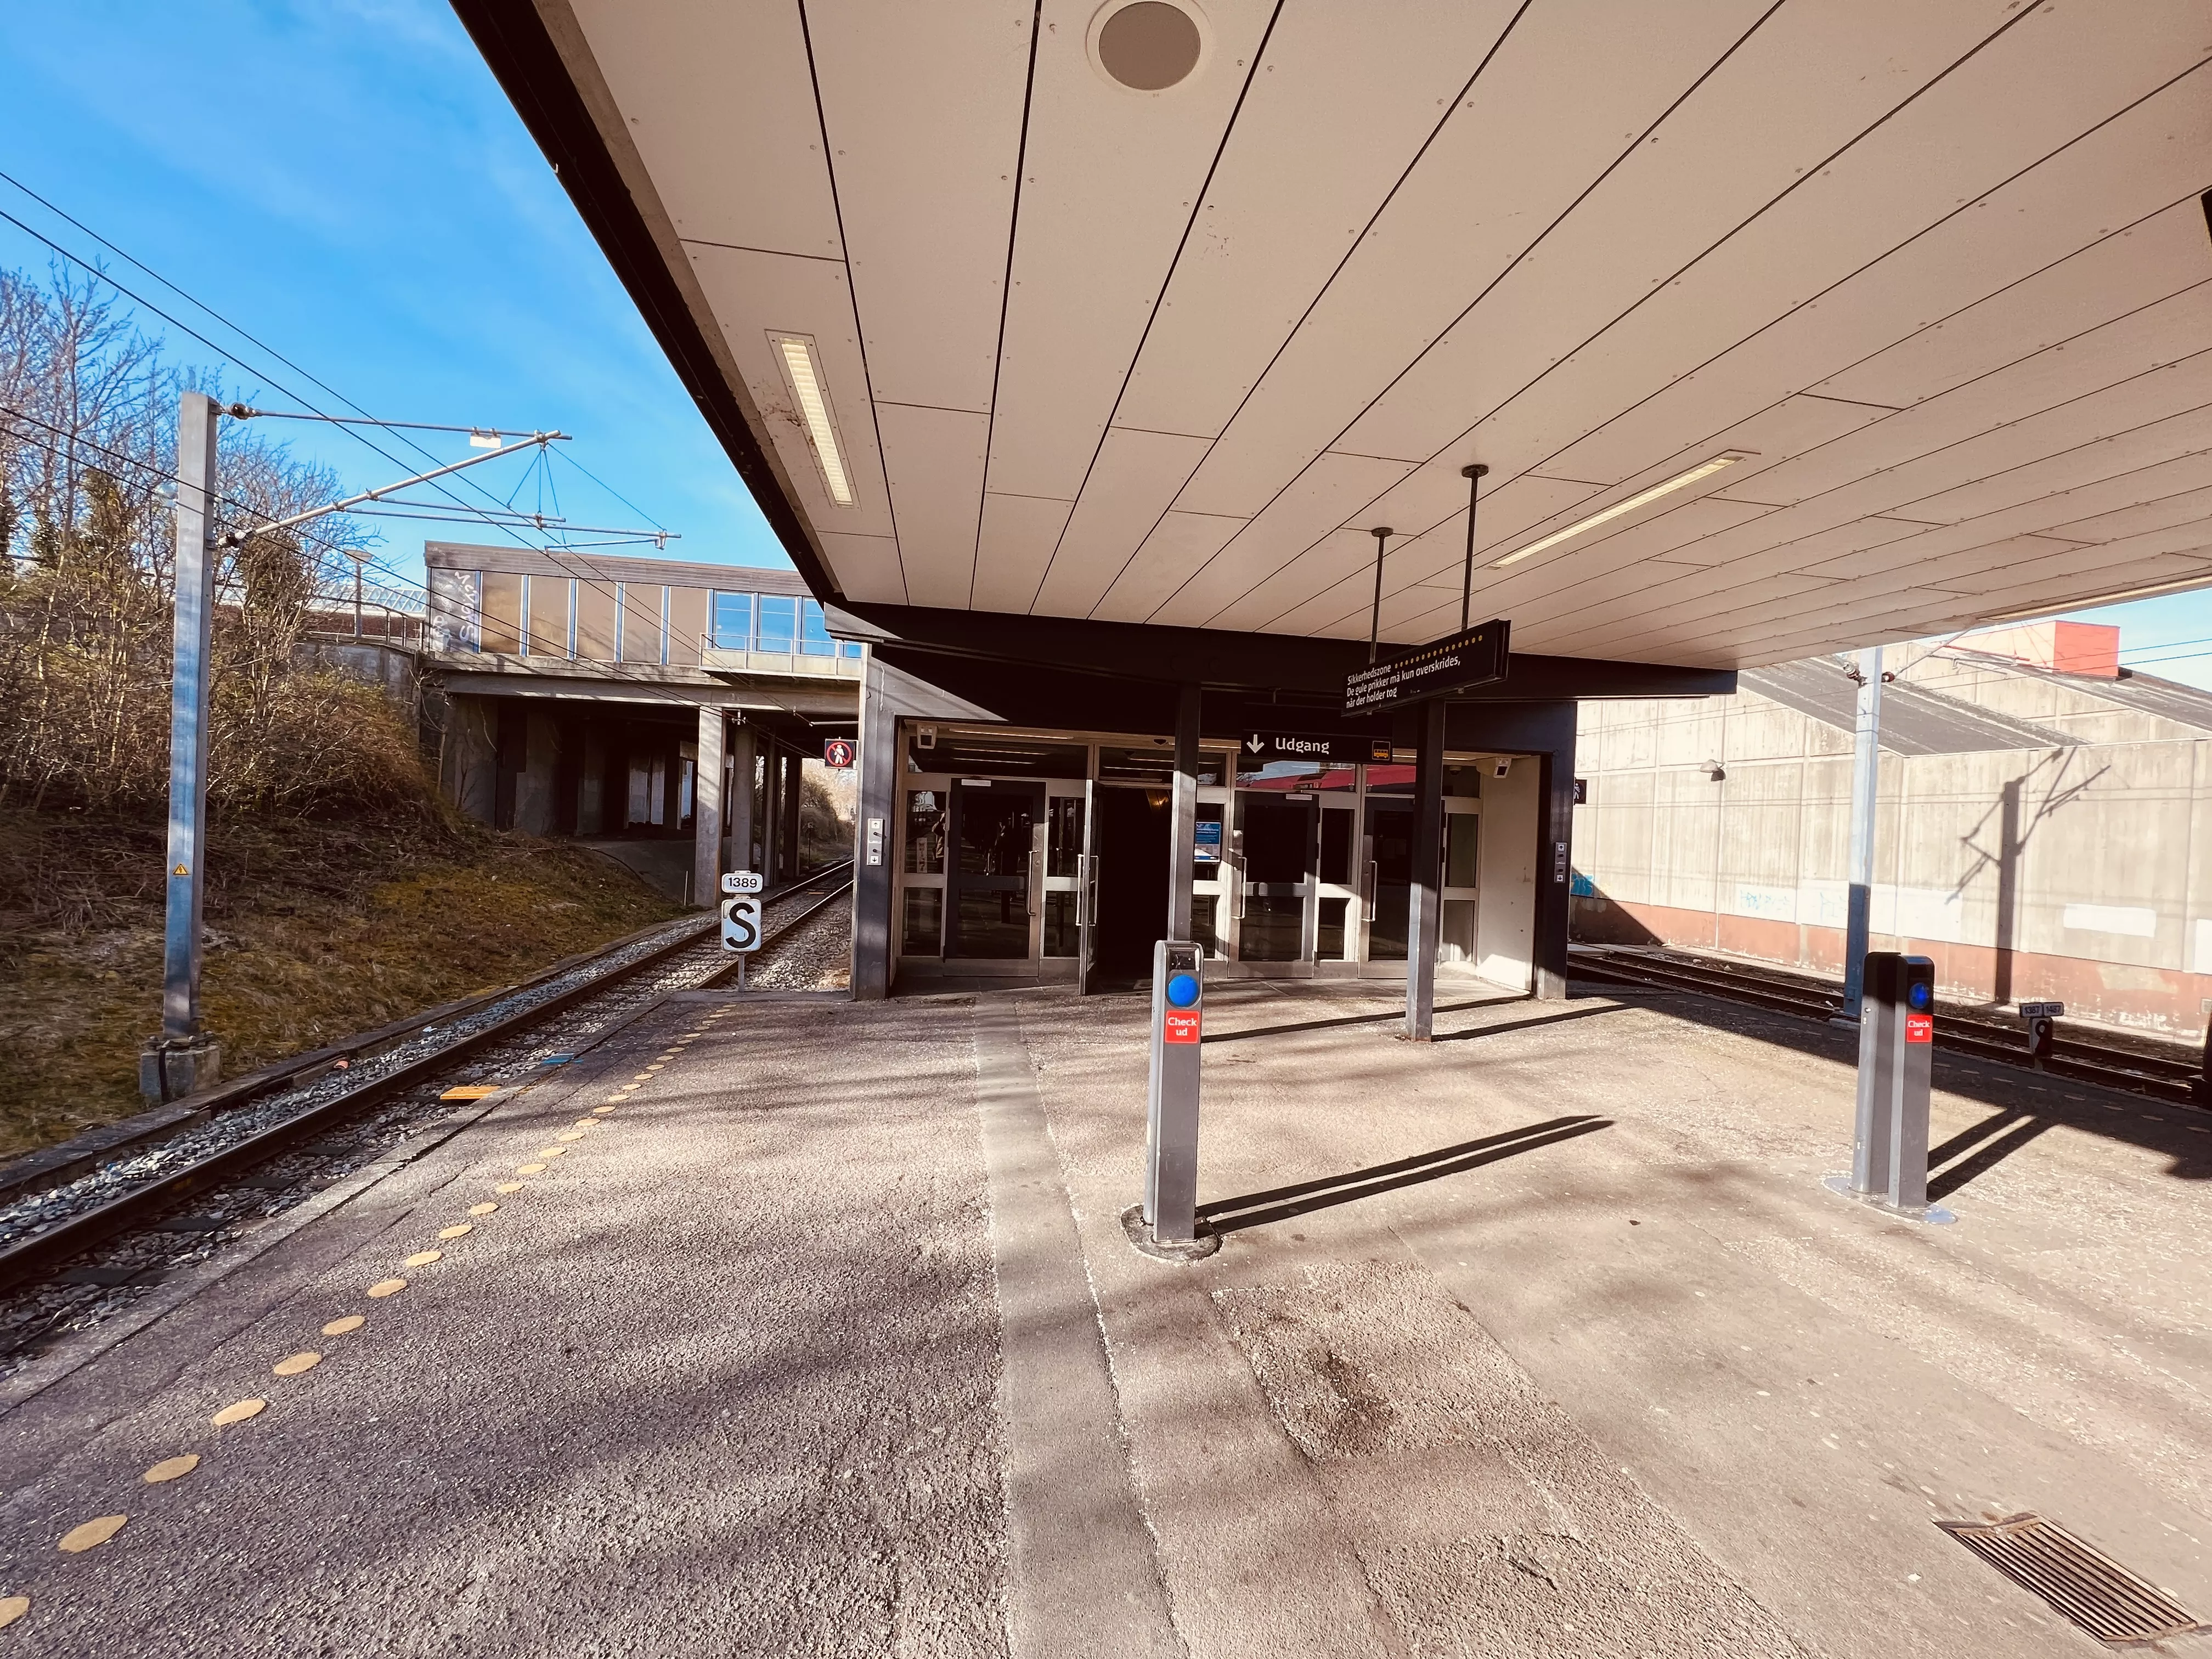 Billede af Hundige S-togsstation.